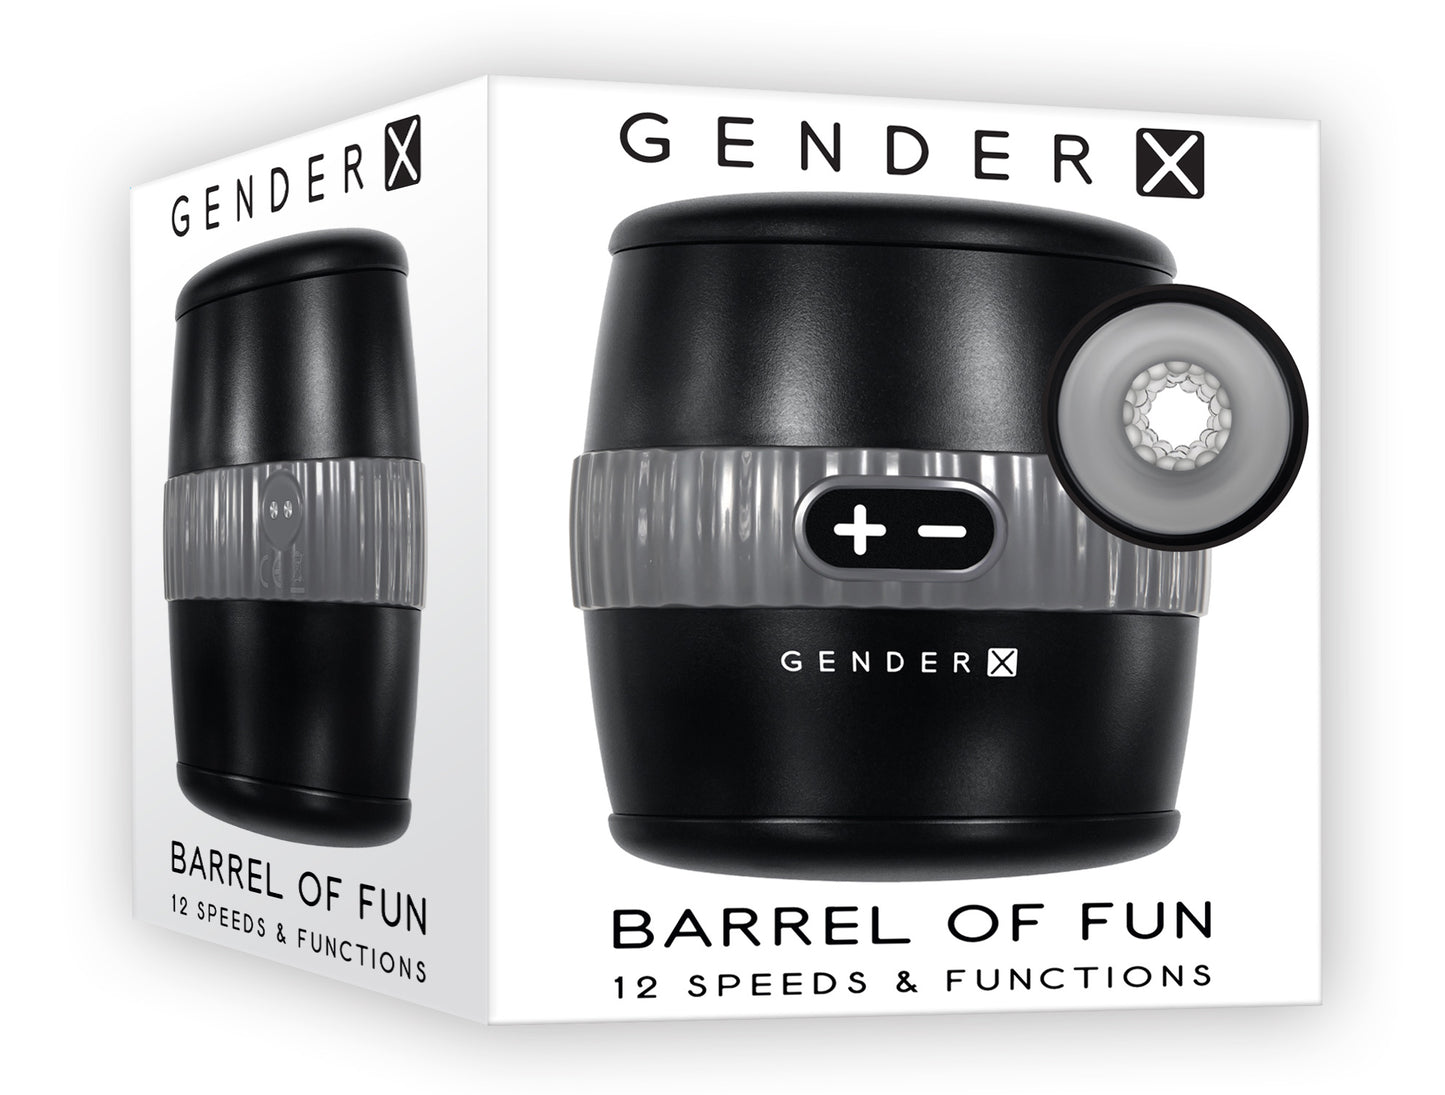 Barrel of Fun